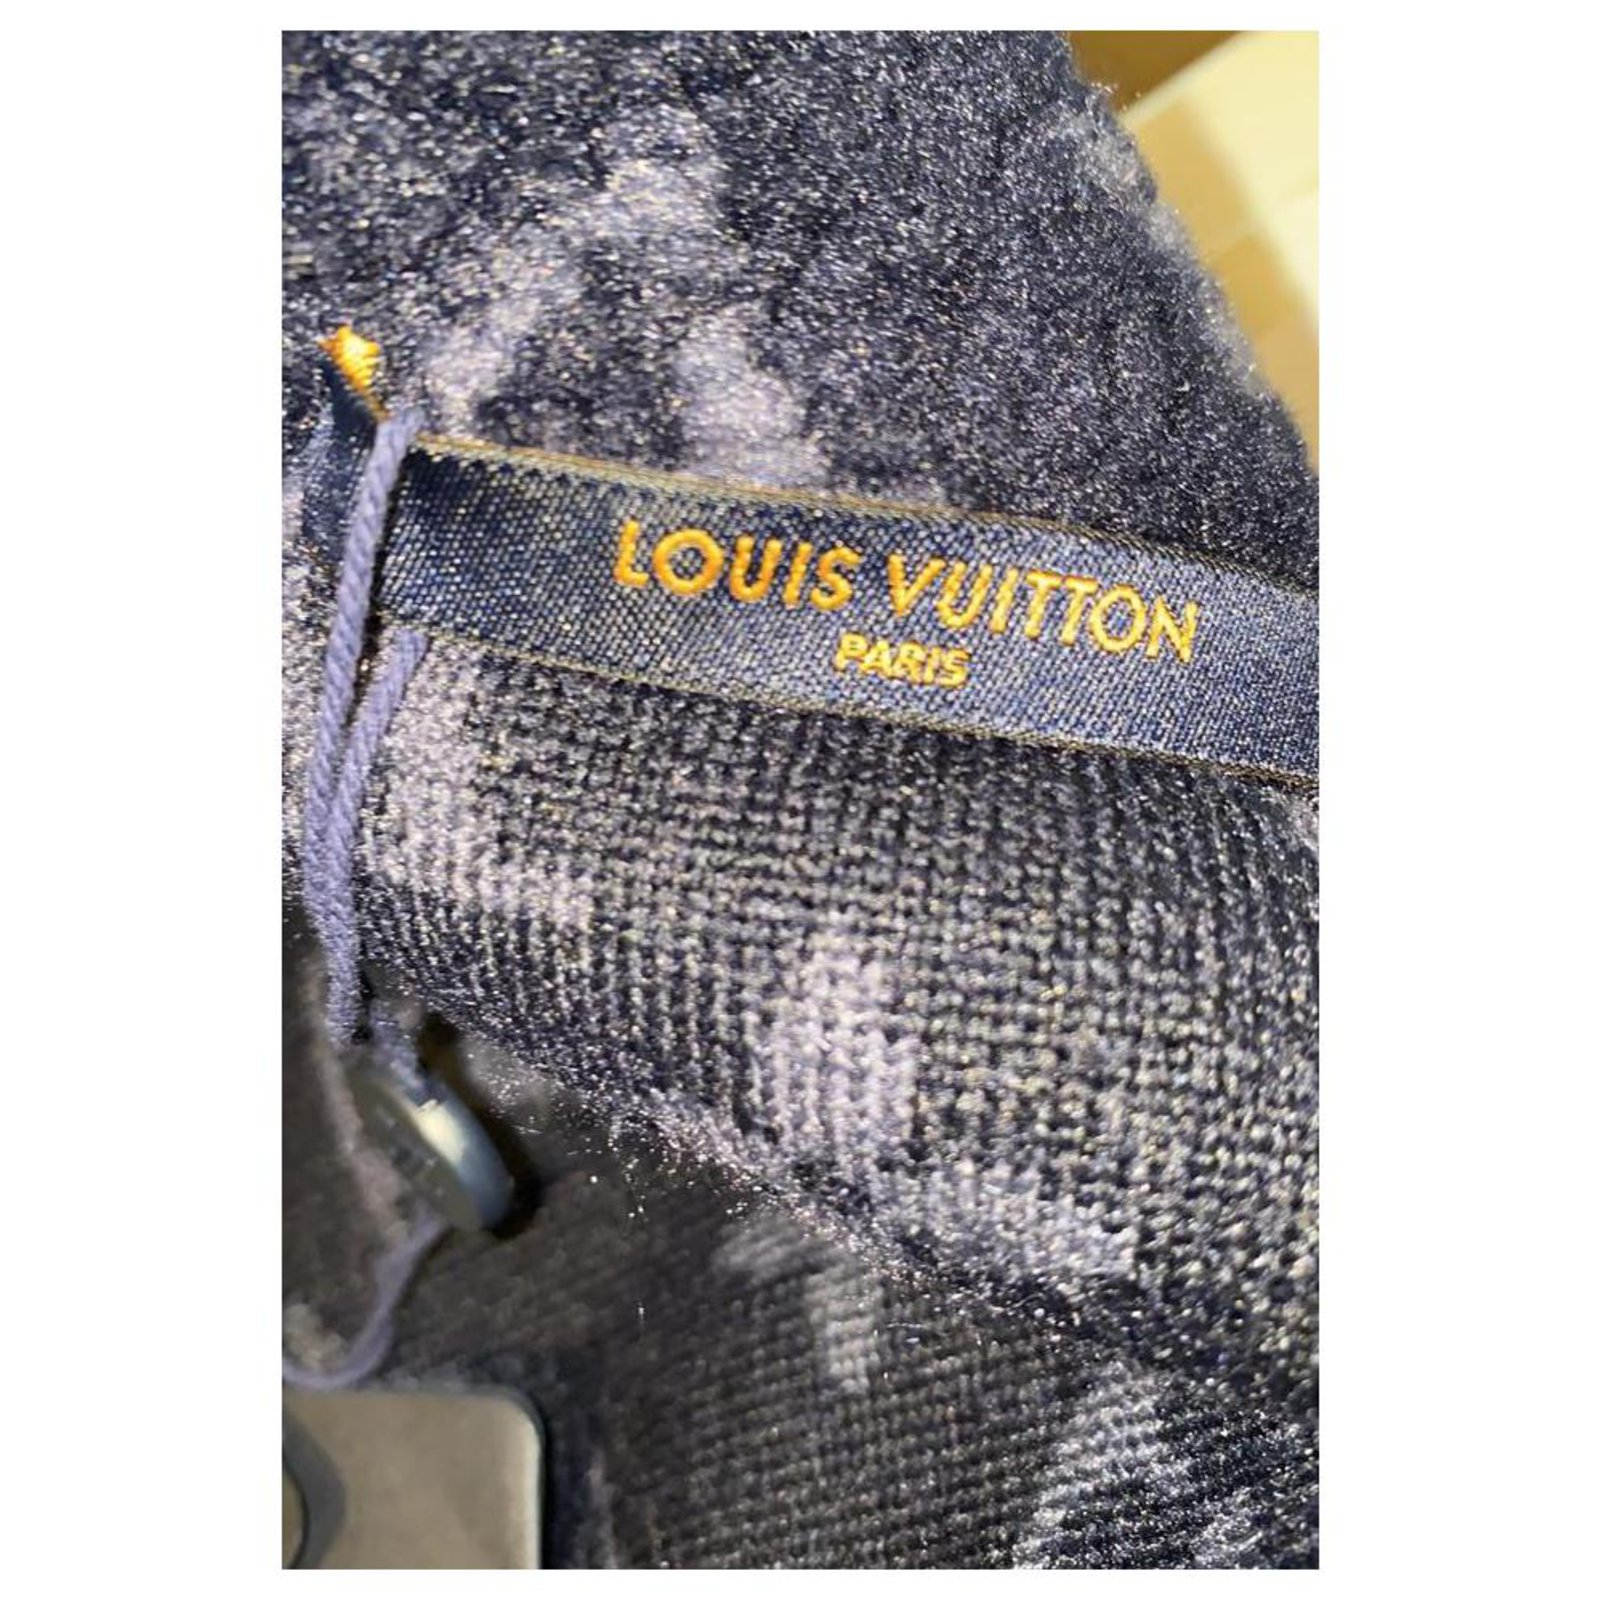 LOUIS VUITTON, Mens Monogram Jacquard Fleece Zip Through Nuit Navy, Blue,  (Size 16 (XL / Plus 0X), New, …